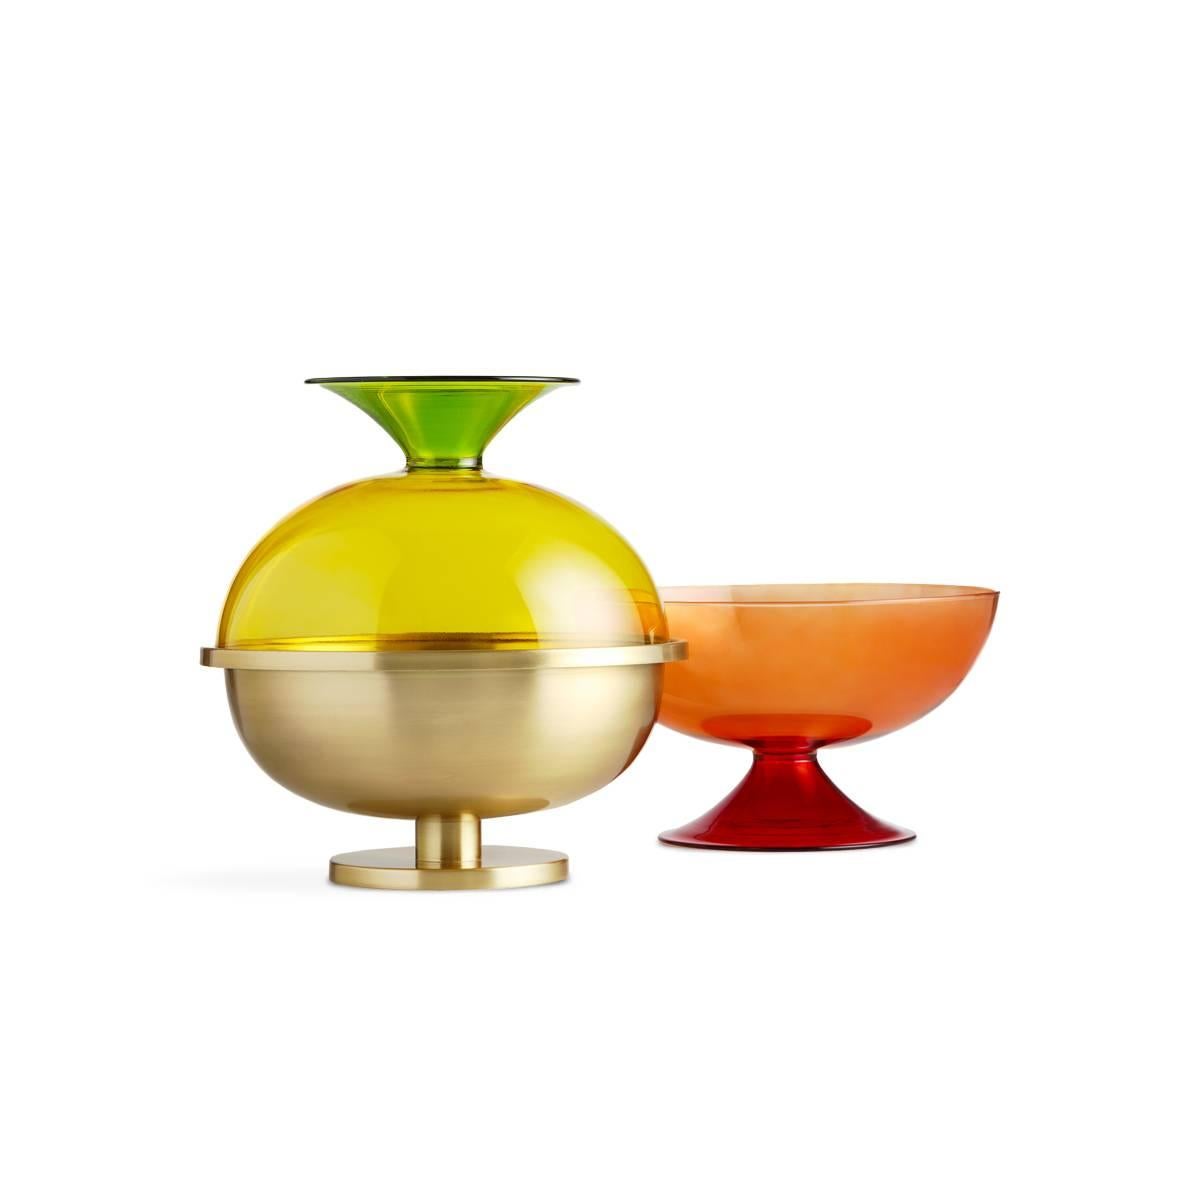 Cuppone ist eine große Messingschale, die zur Tablejoy-Kollektion gehört, einer von Aldo Cibic entworfenen Geschirrfamilie, die sich durch einen fröhlichen, farbenfrohen und leicht radikalen Geist auszeichnet. Alle Objekte von Tablejoy können